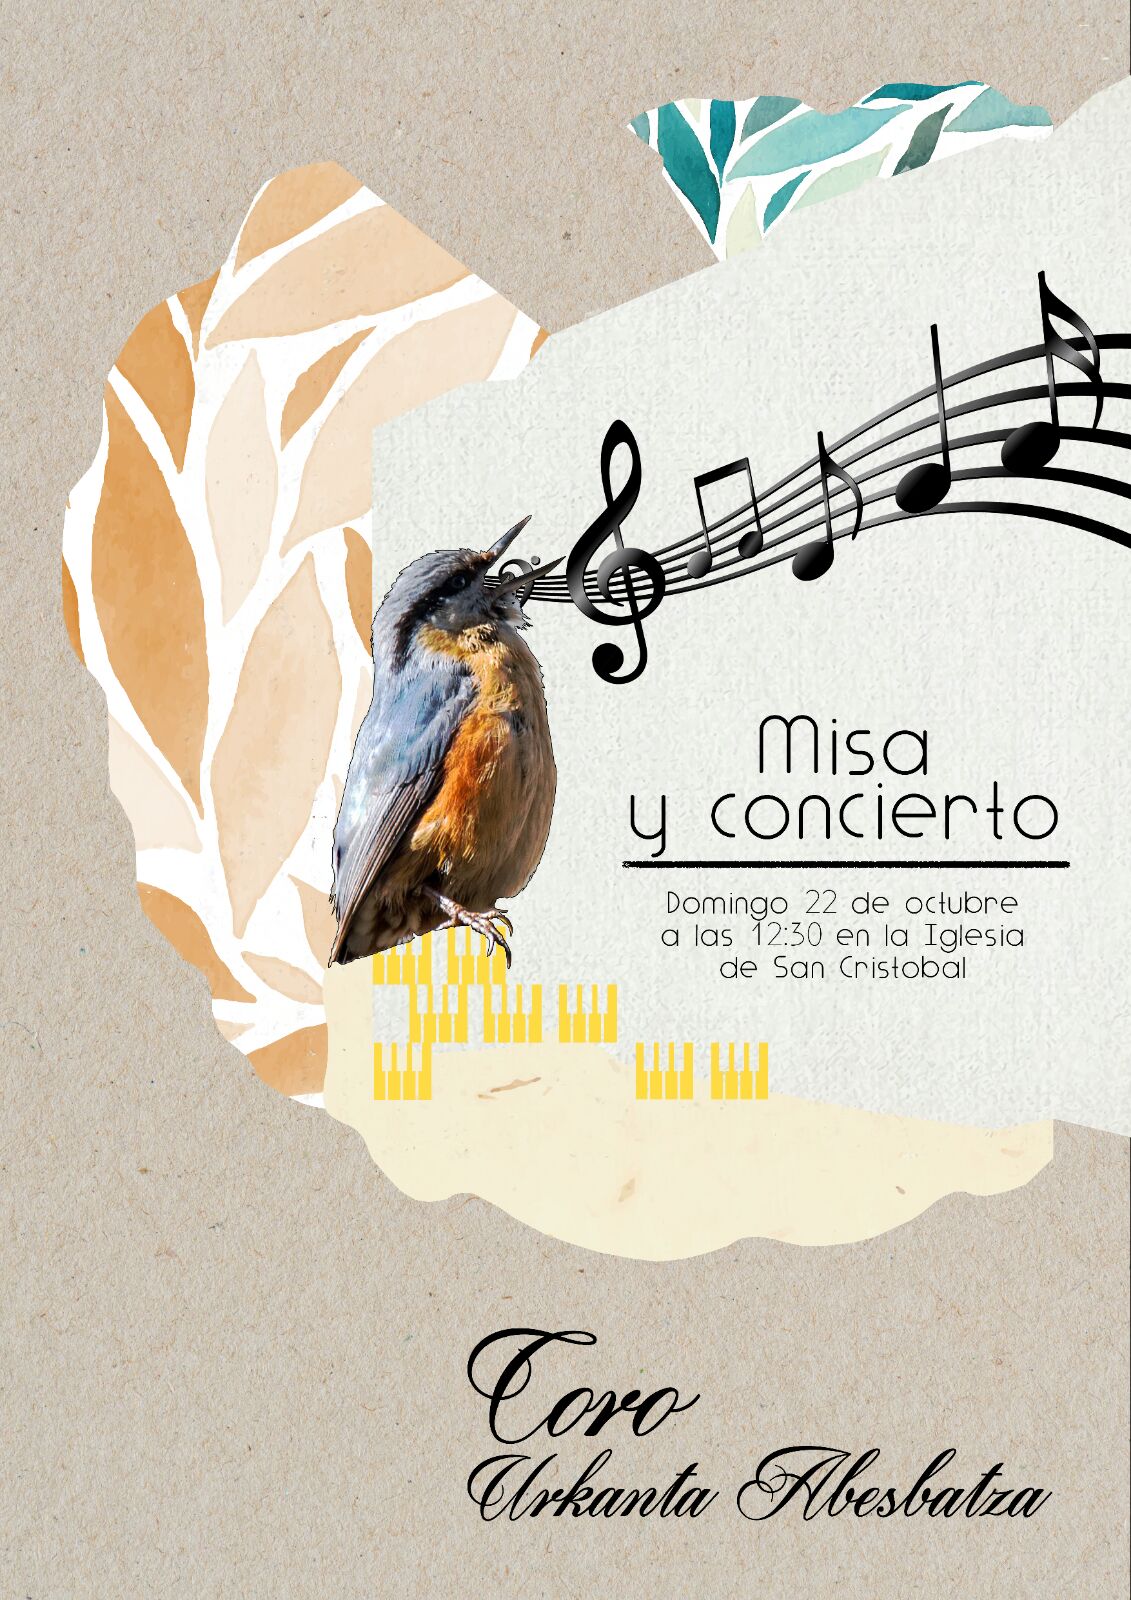 Misa y concierto con el Coro Urkanta Abesbatza , domingo 22 de ocubre a las 12:30 horas en la Iglesia de San Cristobal (Vitoria-Gasteiz)